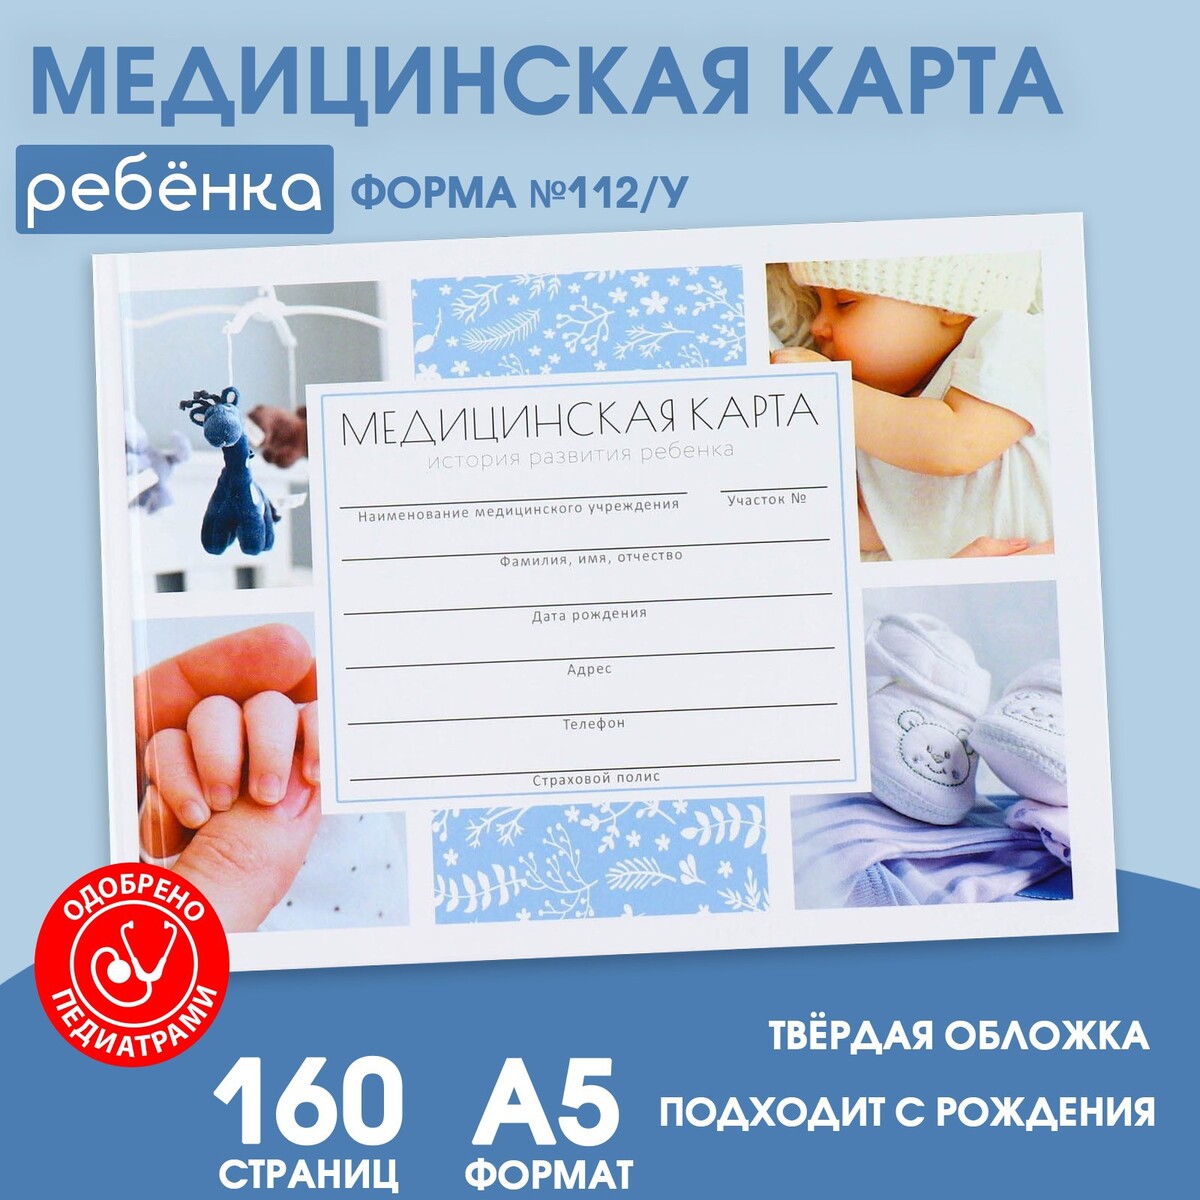 Медицинская карта в твердой обложке форма №112/у